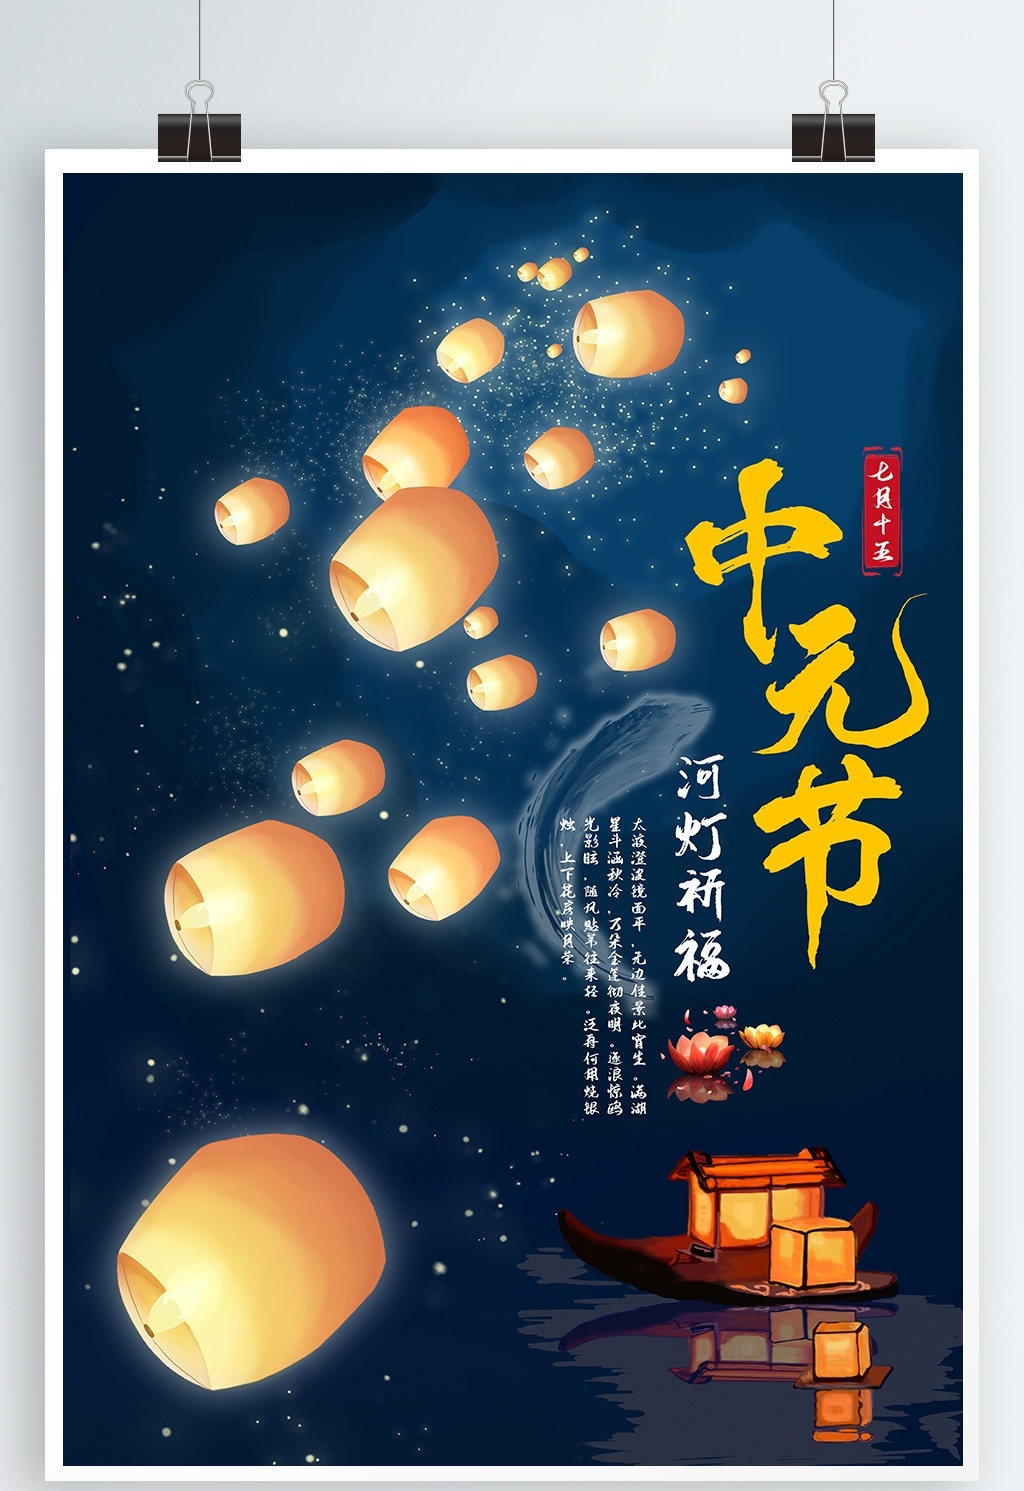 中元节祈福祭祀原创素材背景插画图片-千库网